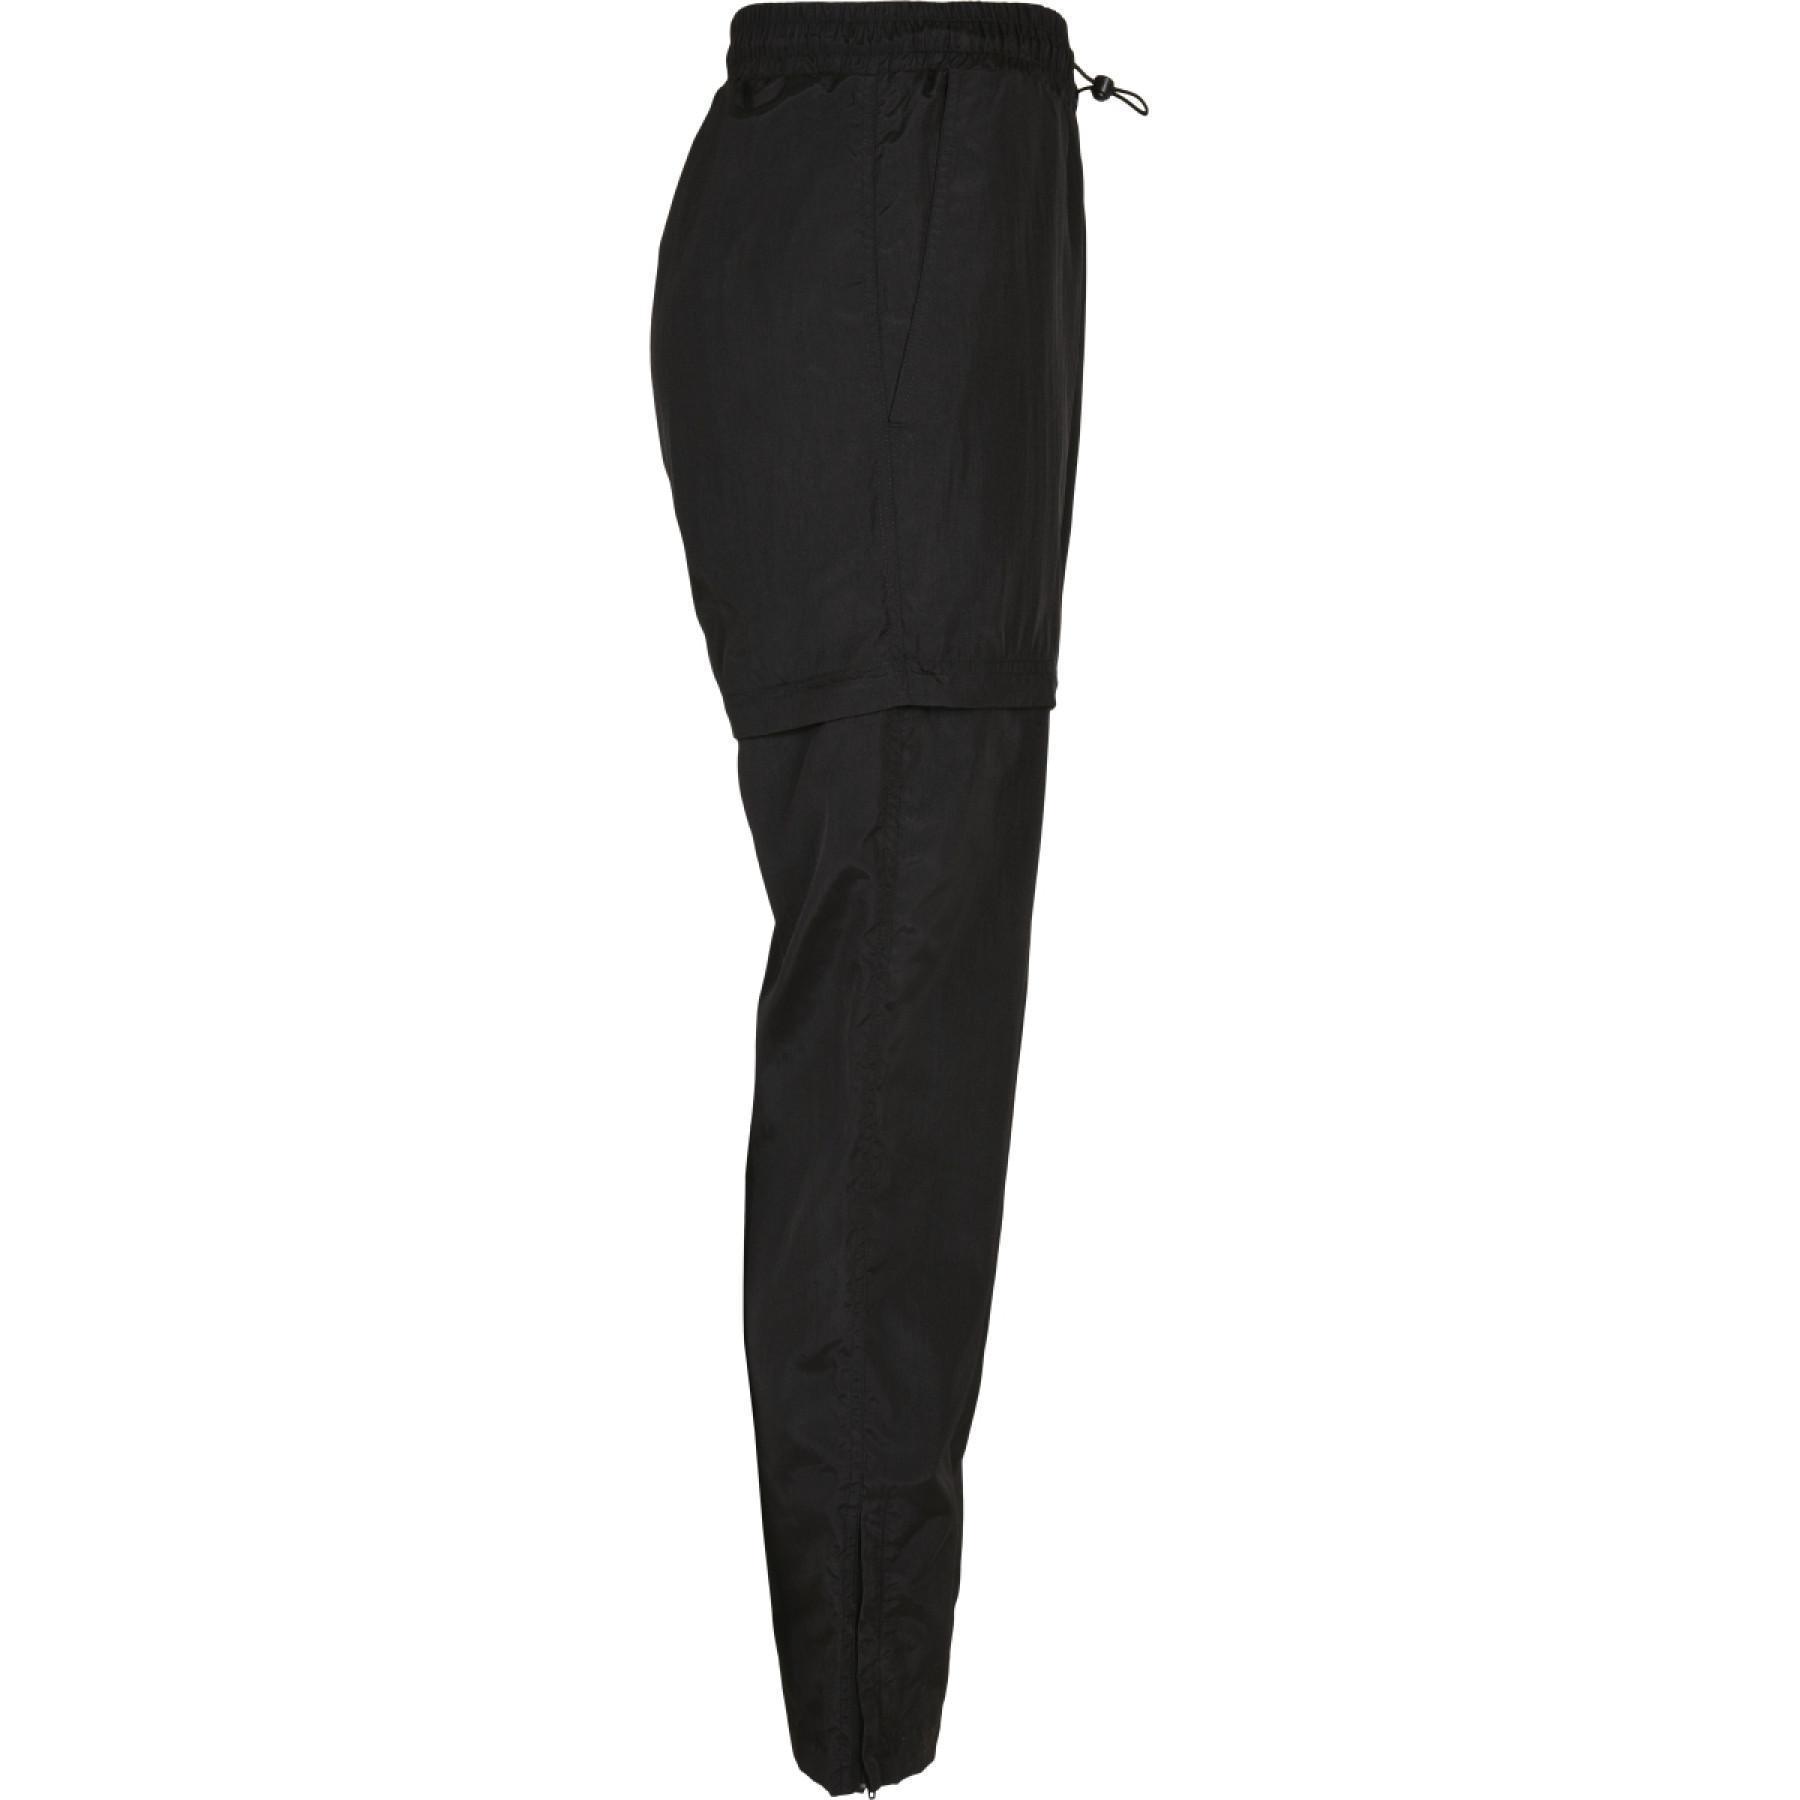 Pantalon femme Urban Classics shiny crinkle nylon zip